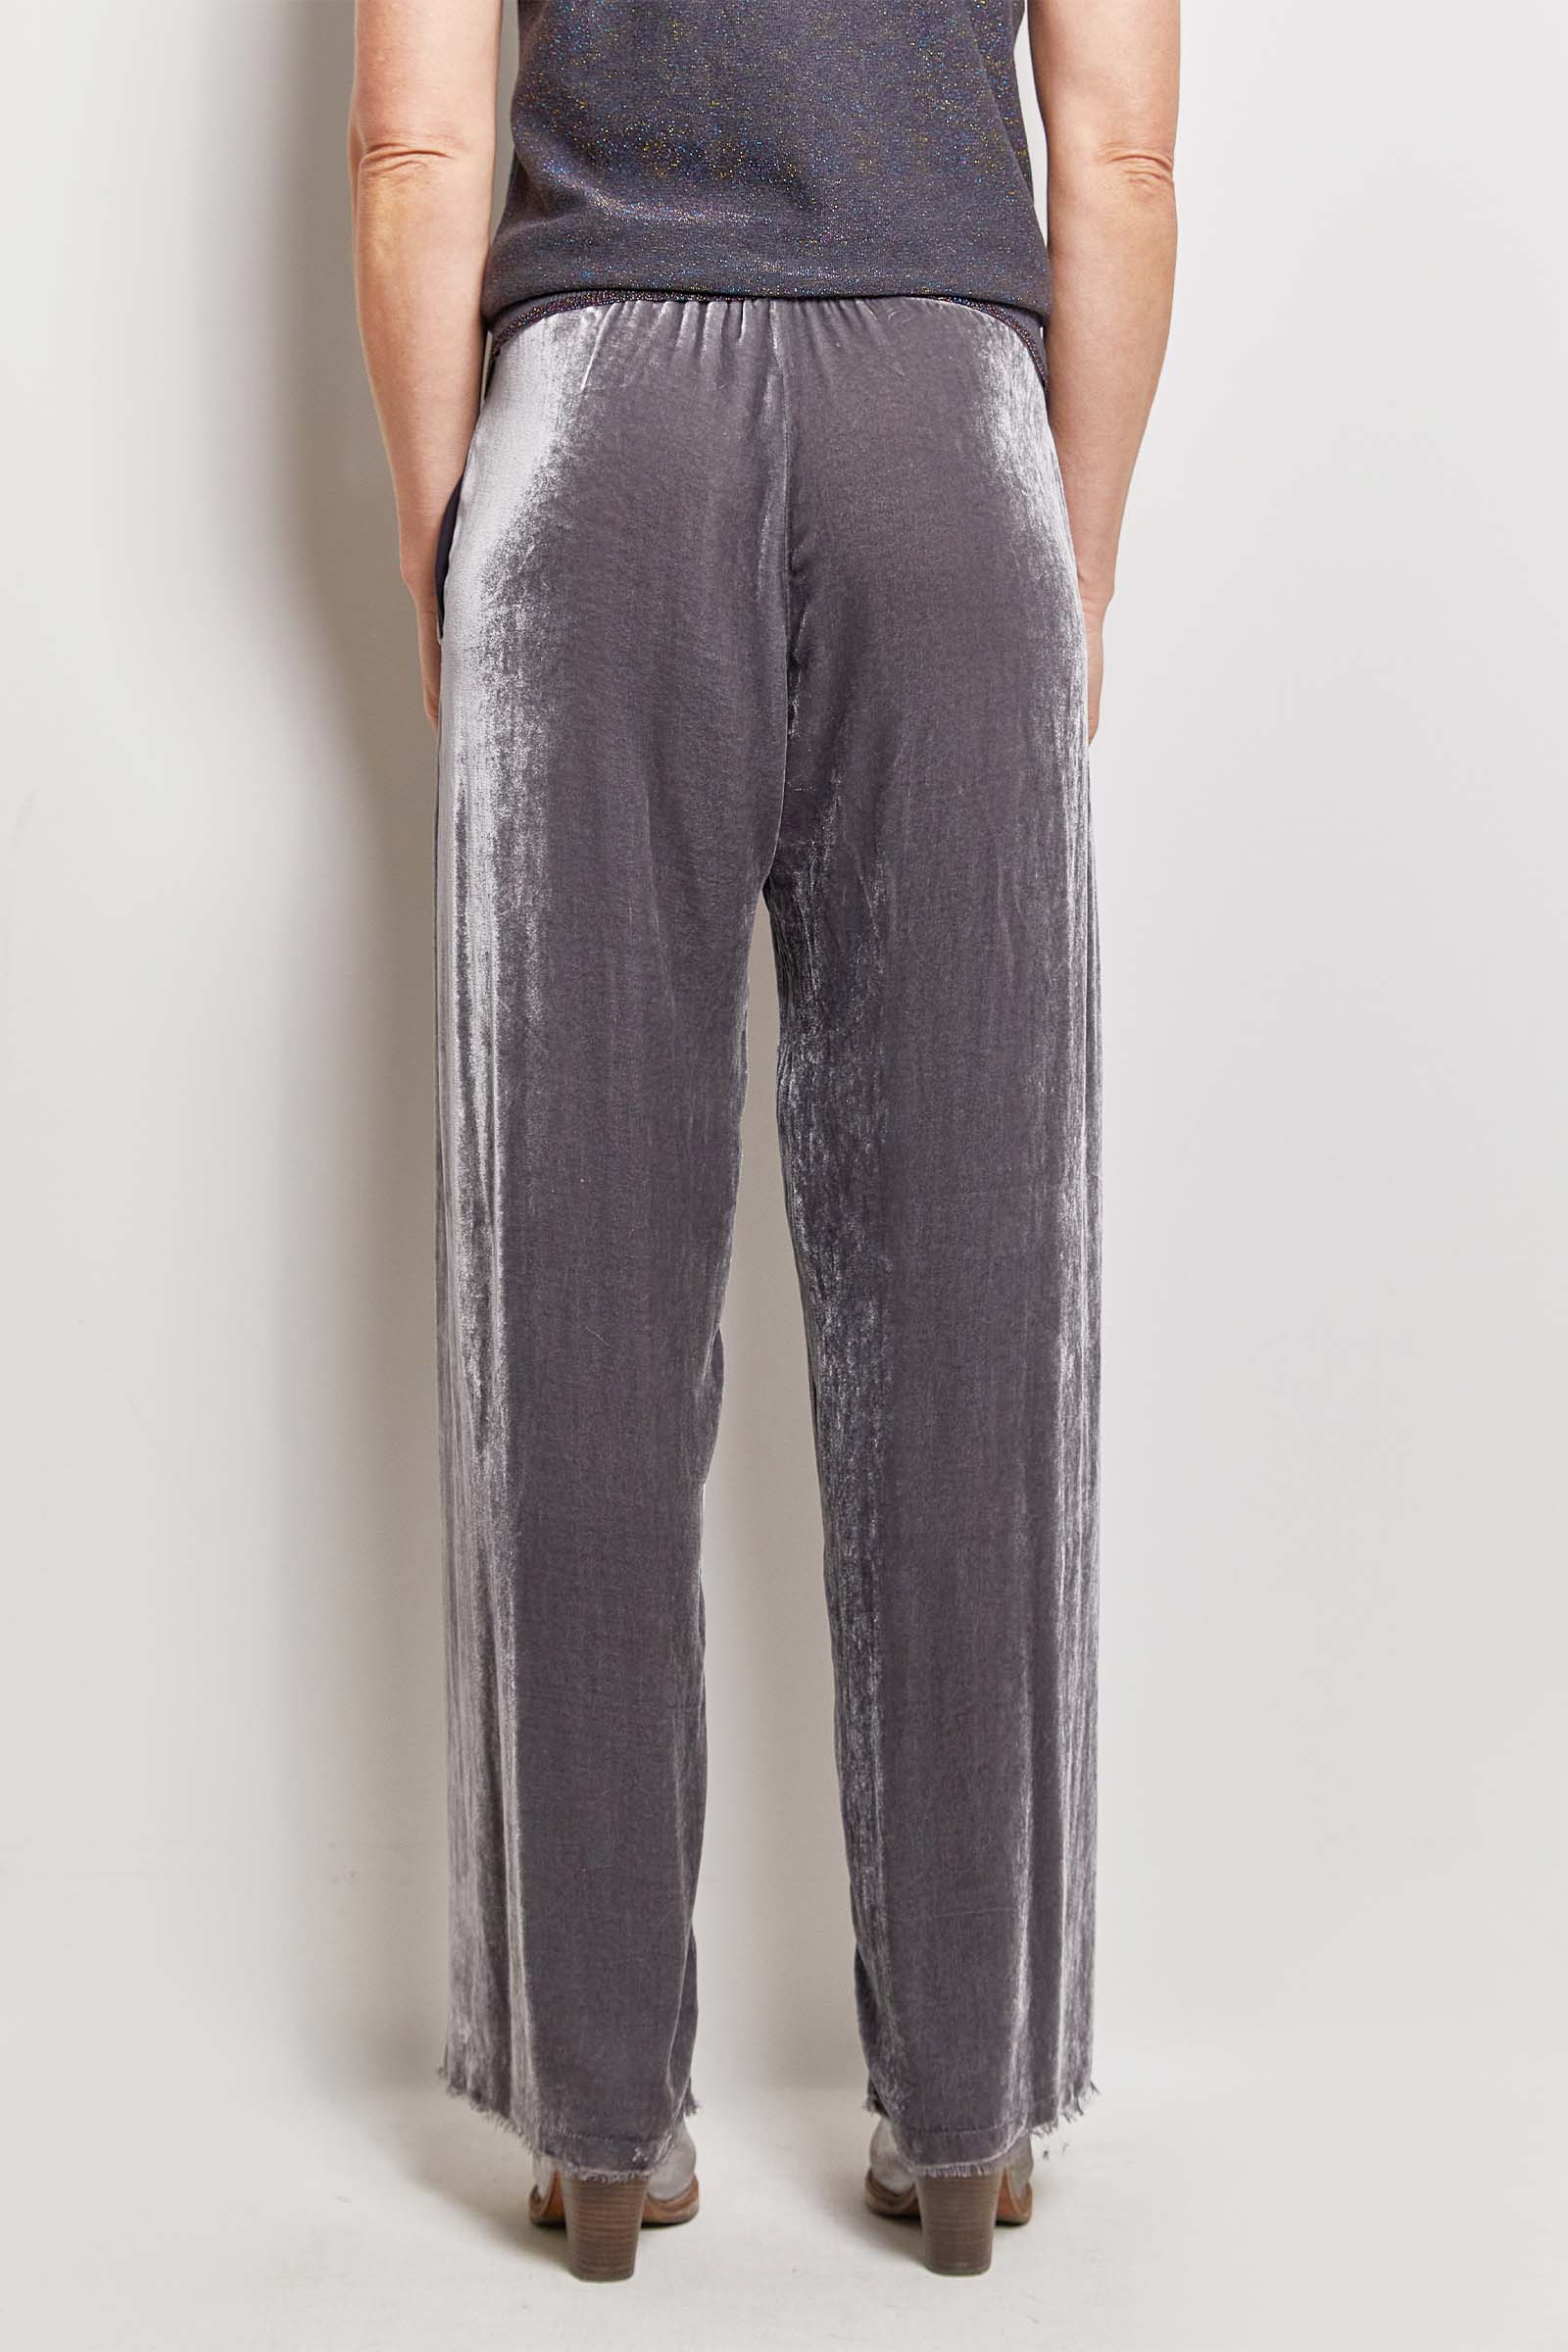 Jigsaw Wool Flannel Slouch Trousers Wide Leg Tie Waist Grey Size Uk 16 |  eBay